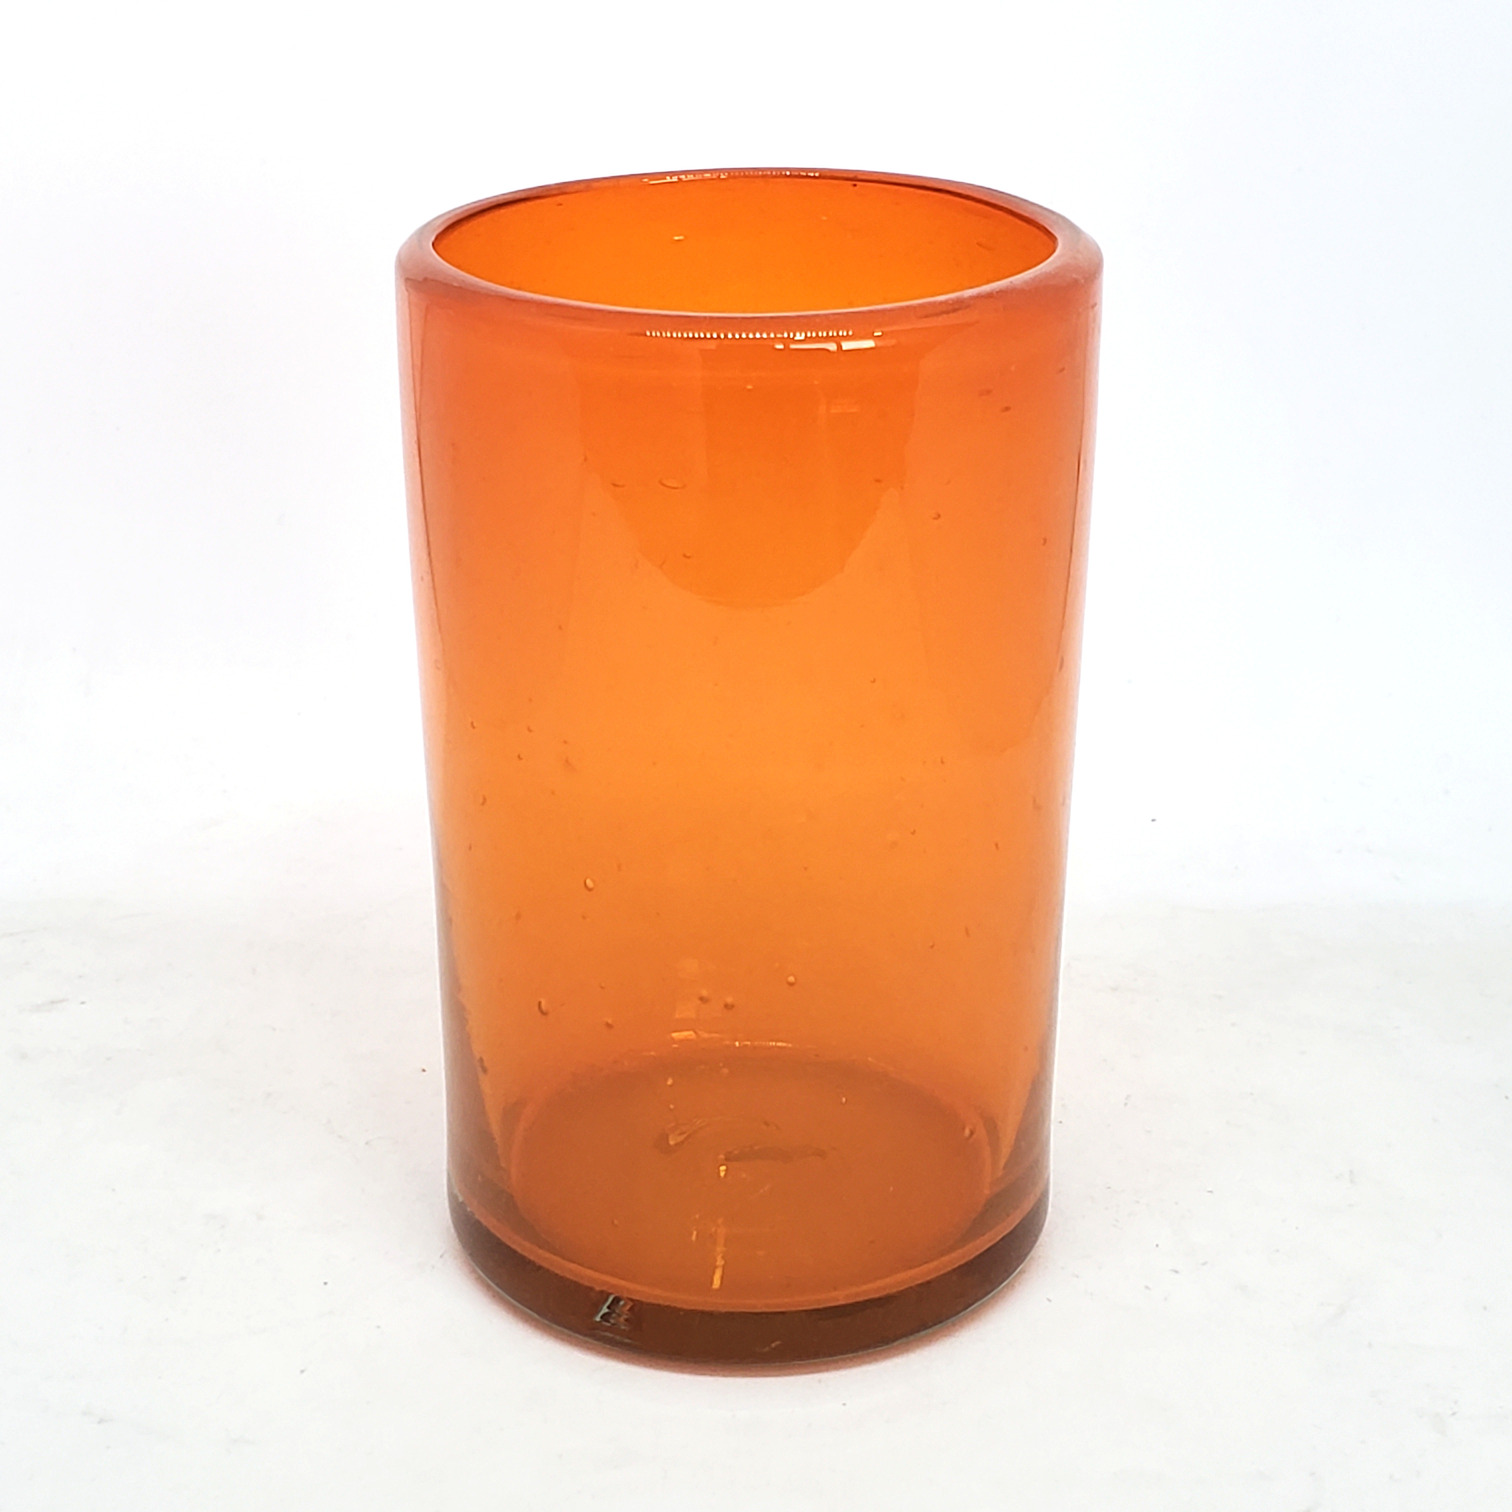 Ofertas / Juego de 6 vasos grandes color naranja / �stos artesanales vasos le dar�n un toque cl�sico a su bebida favorita.